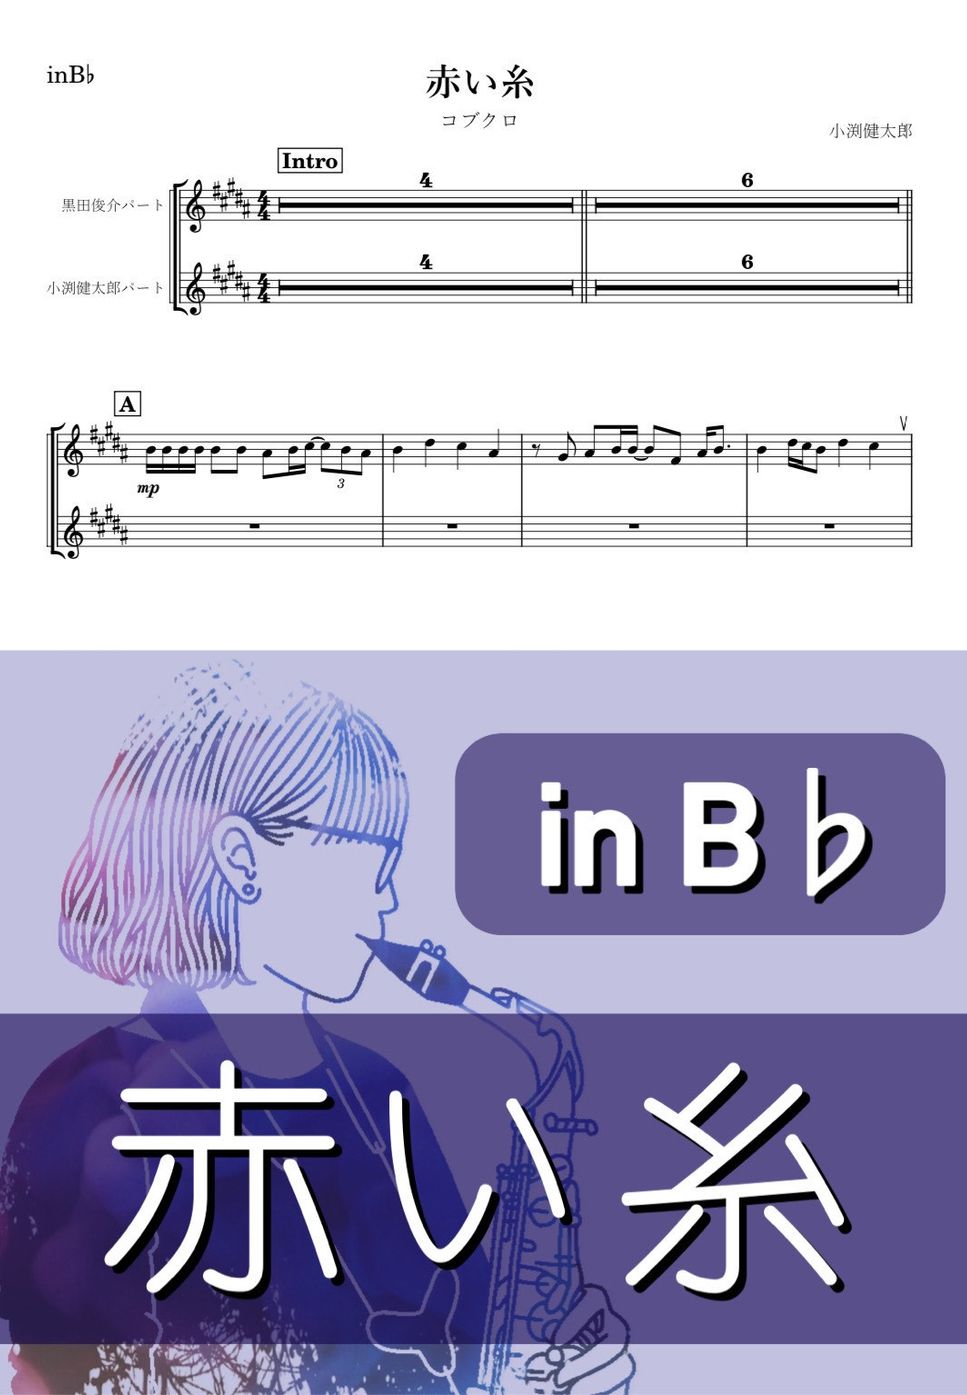 コブクロ - 赤い糸 (B♭) by kanamusic